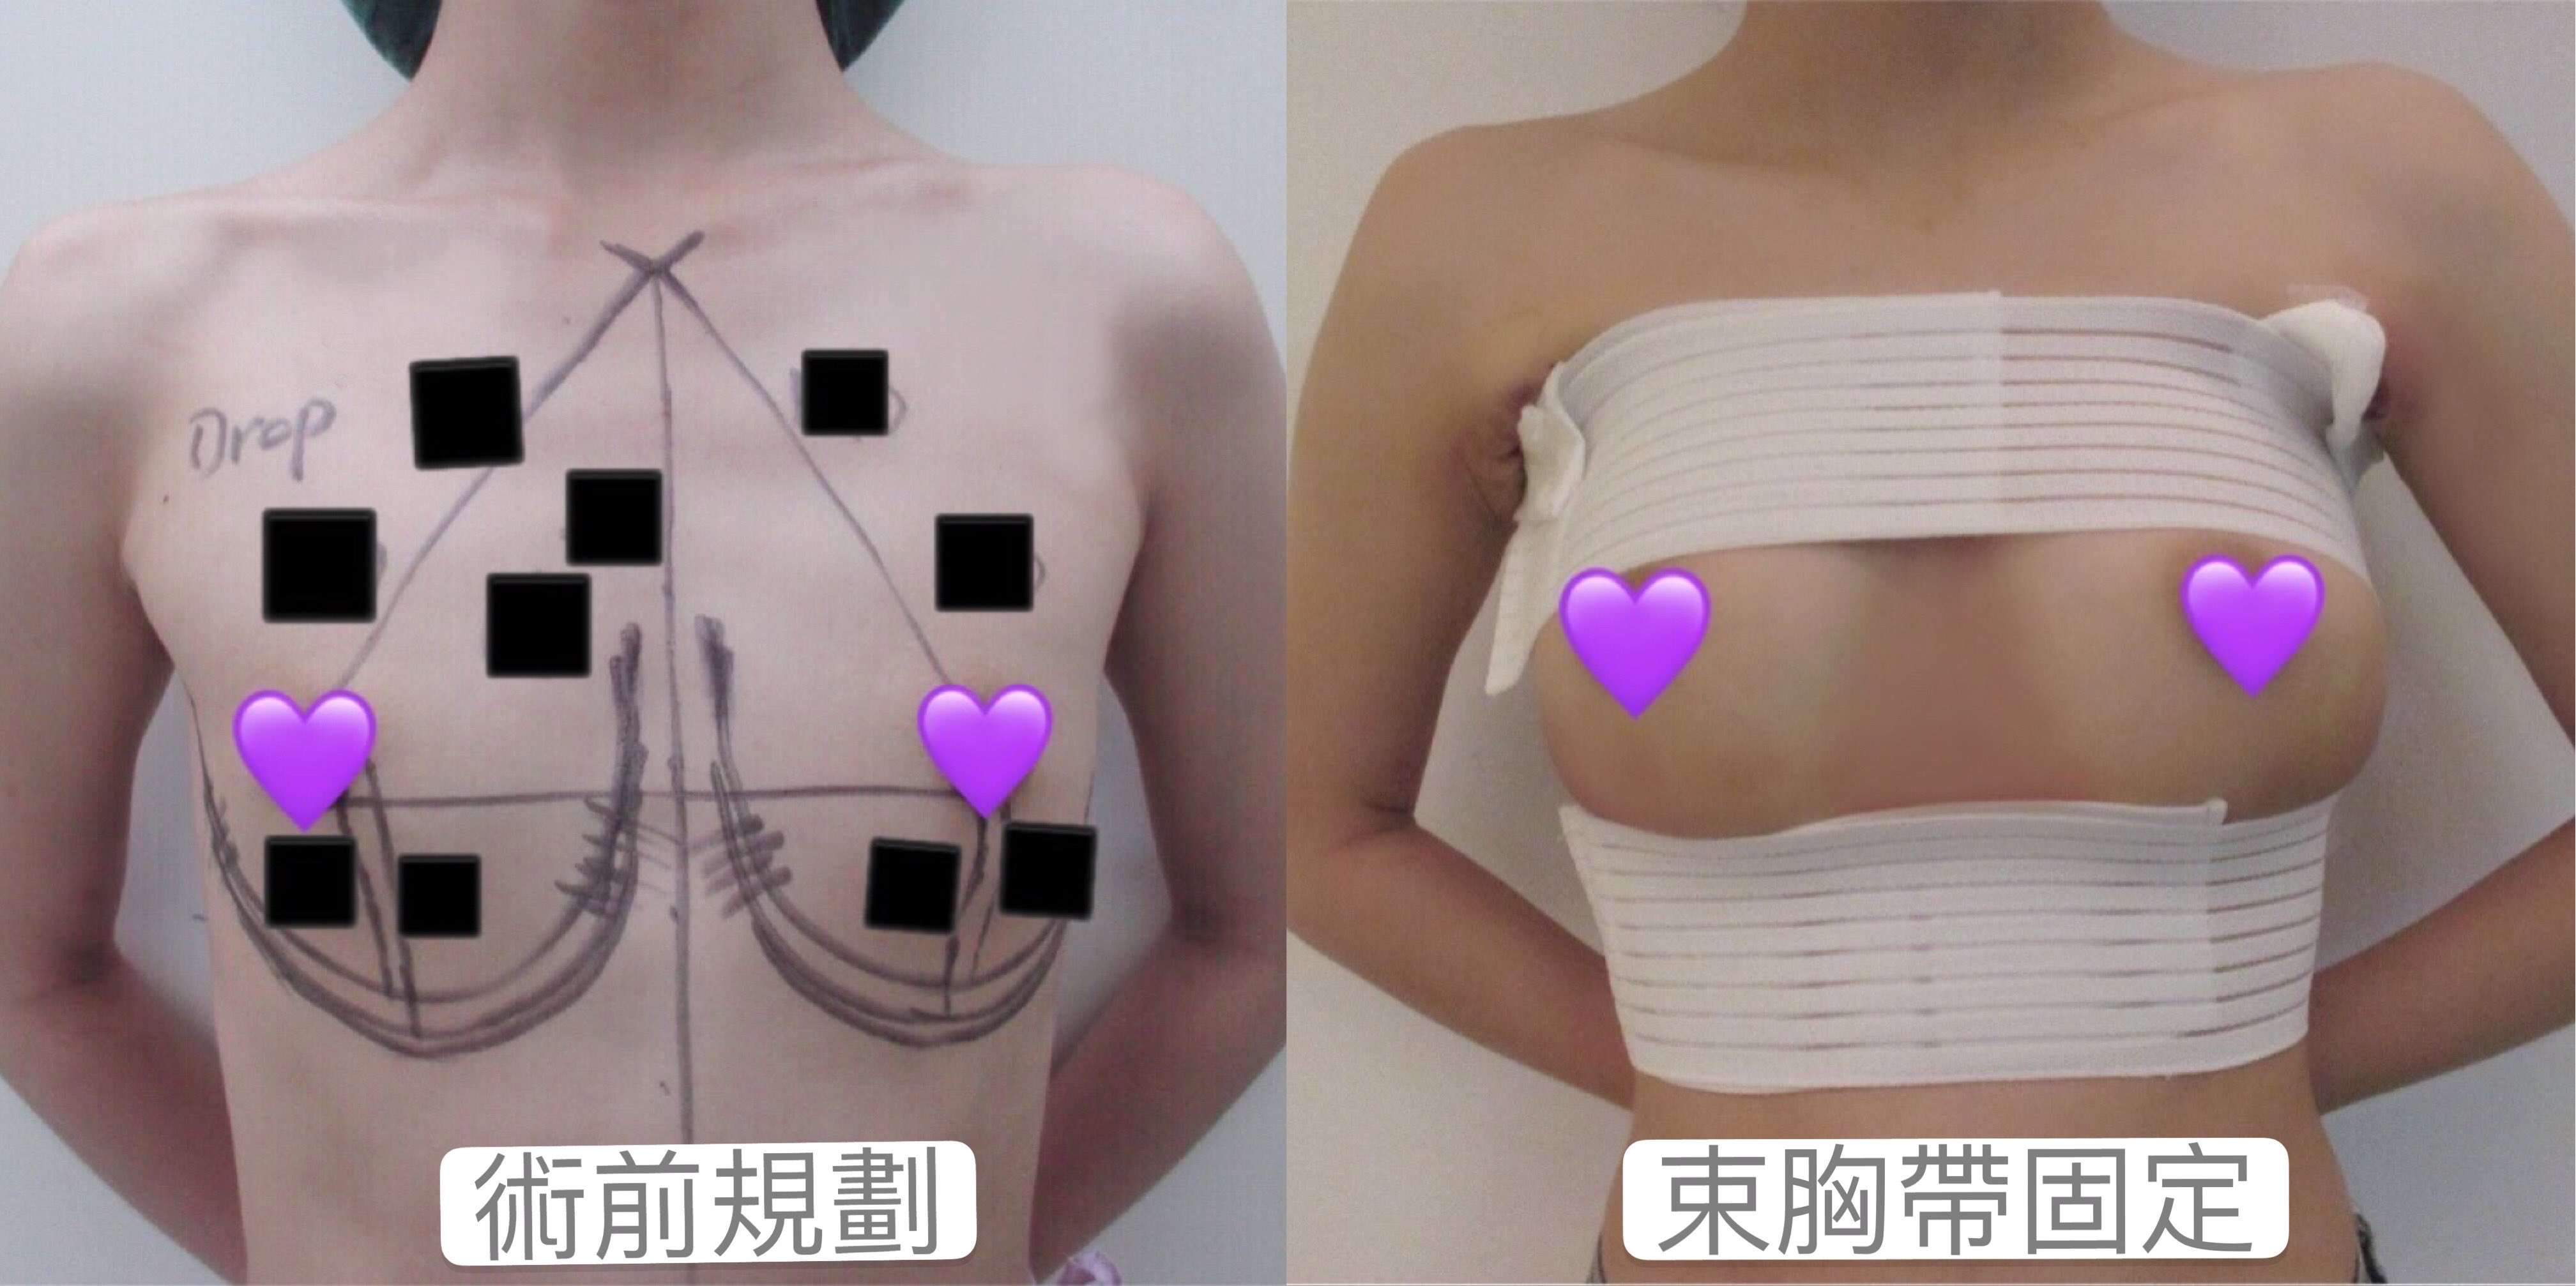 隆乳手術前規劃與束胸帶固定